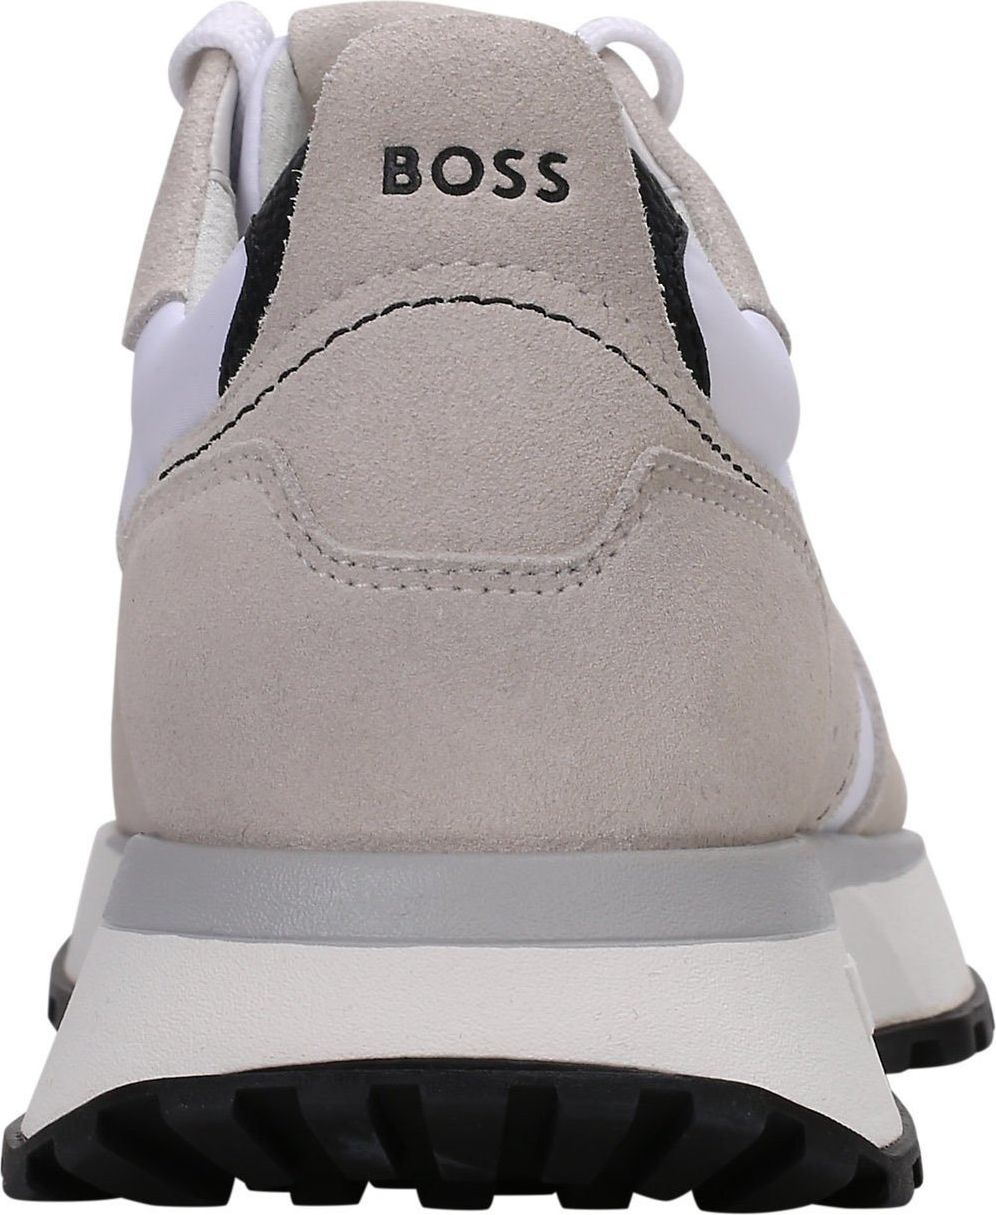 Hugo Boss Boss Heren Sneaker Wit 50513179/121 Jonah Wit